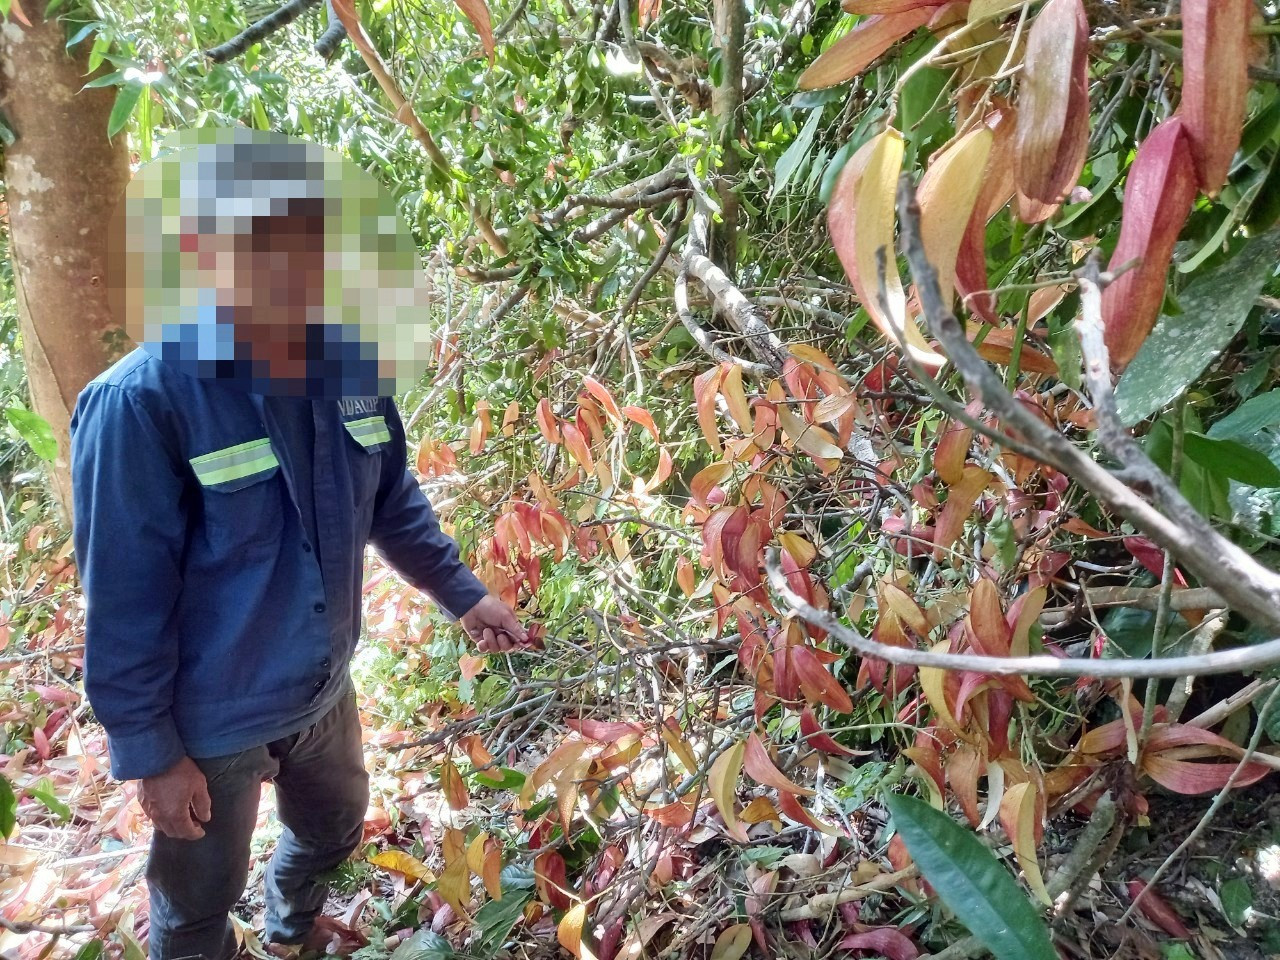 Hành vi chặt hạ cây ươi để lấy quả sẽ bị cơ quan chức năng huyện Phước Sơn xử lý nghiêm.